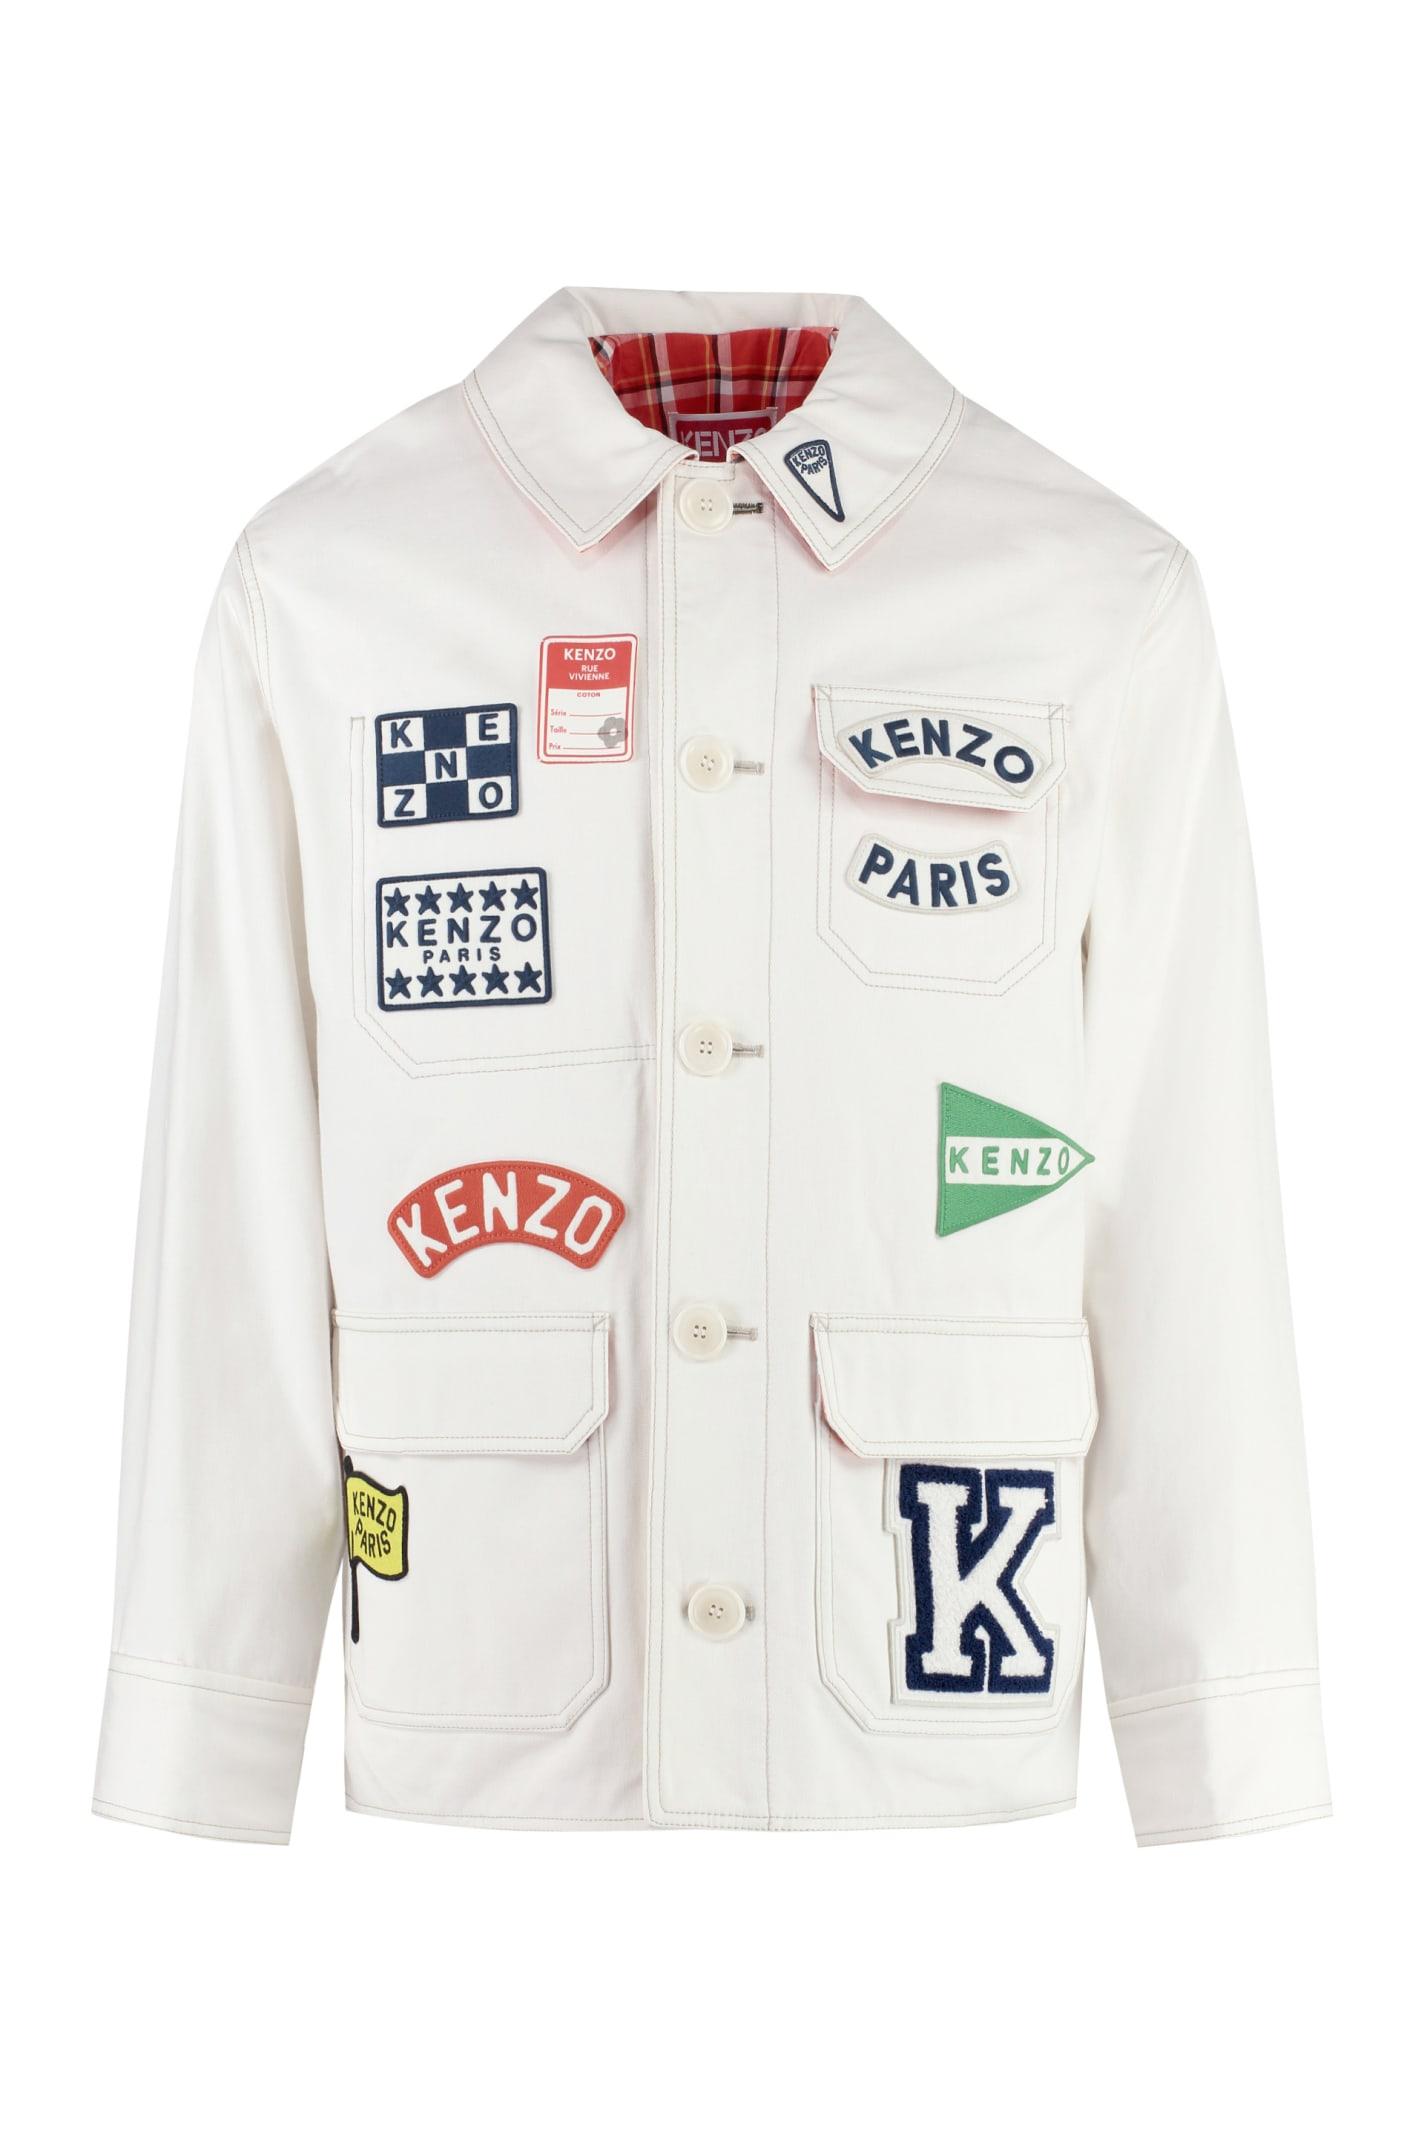 KENZO ' Sailor' Denim Jacket in White for Men